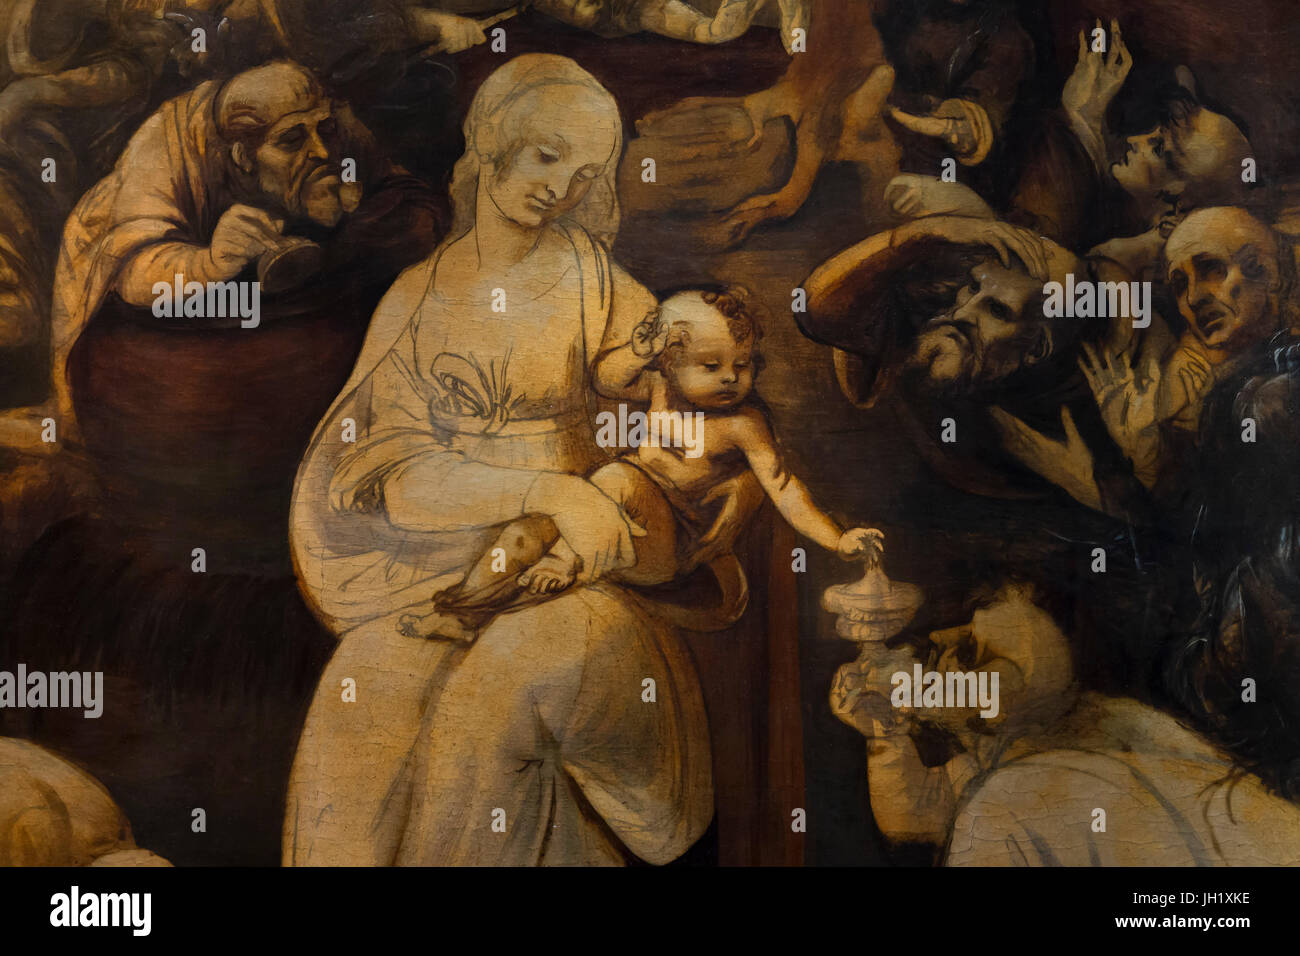 Detalle de la Adoración de los magos, de Leonardo da Vinci, circa 1482, Galería de los Uffizi, Florencia, Toscana, Italia, Europa Foto de stock